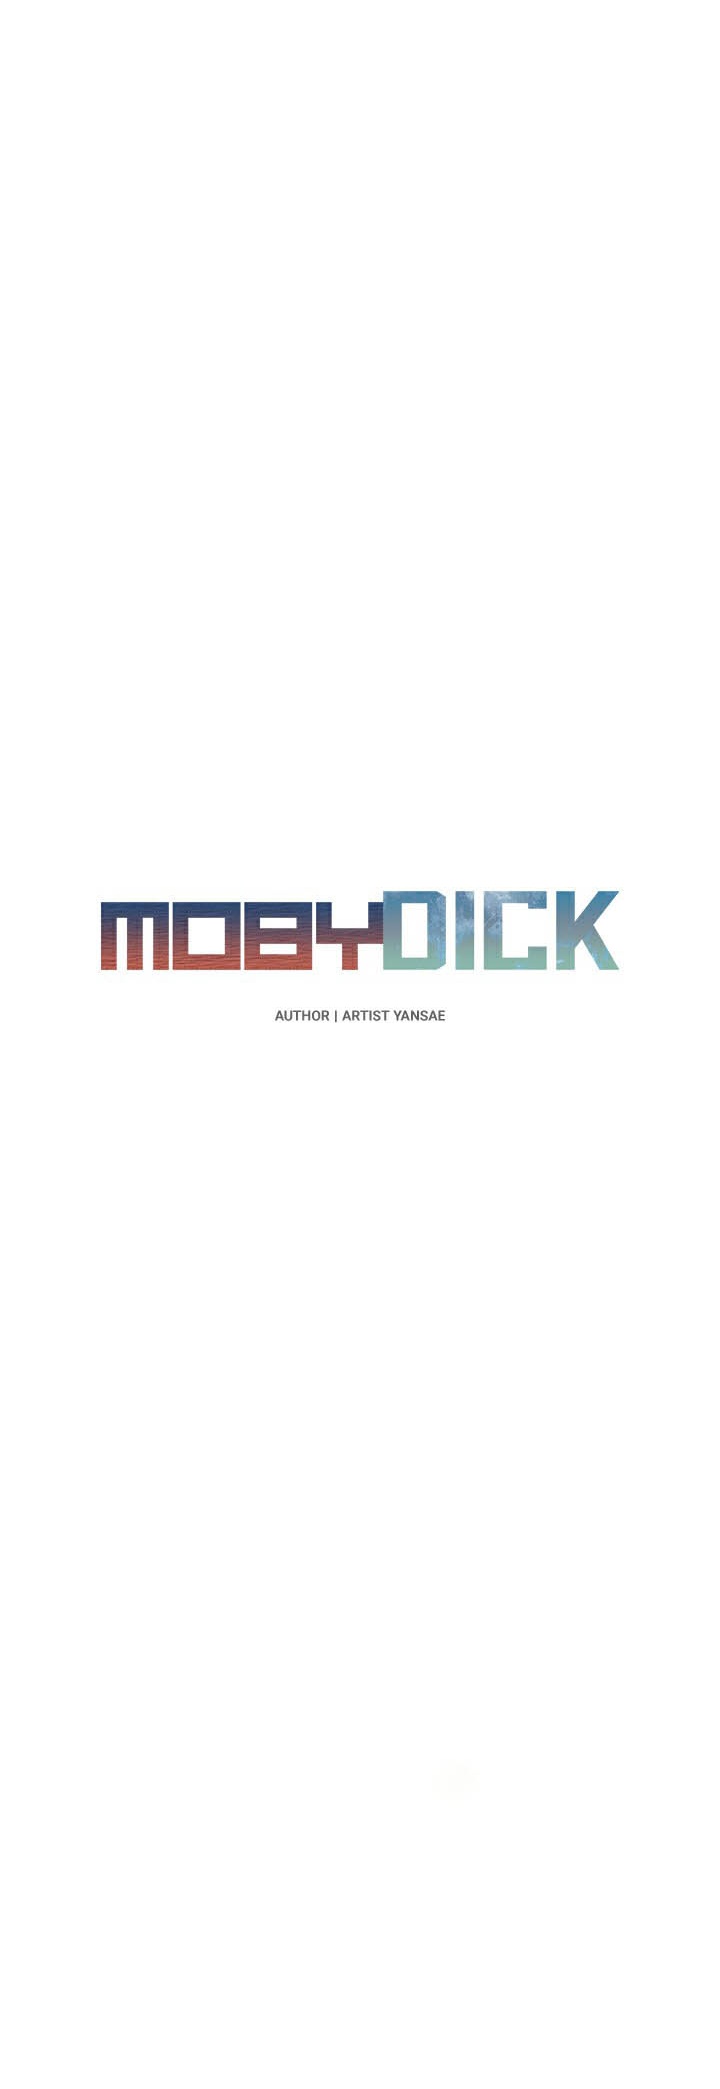 อ่านโดจิน เรื่อง Moby Dick โมบี้ดิ๊ก 28 08